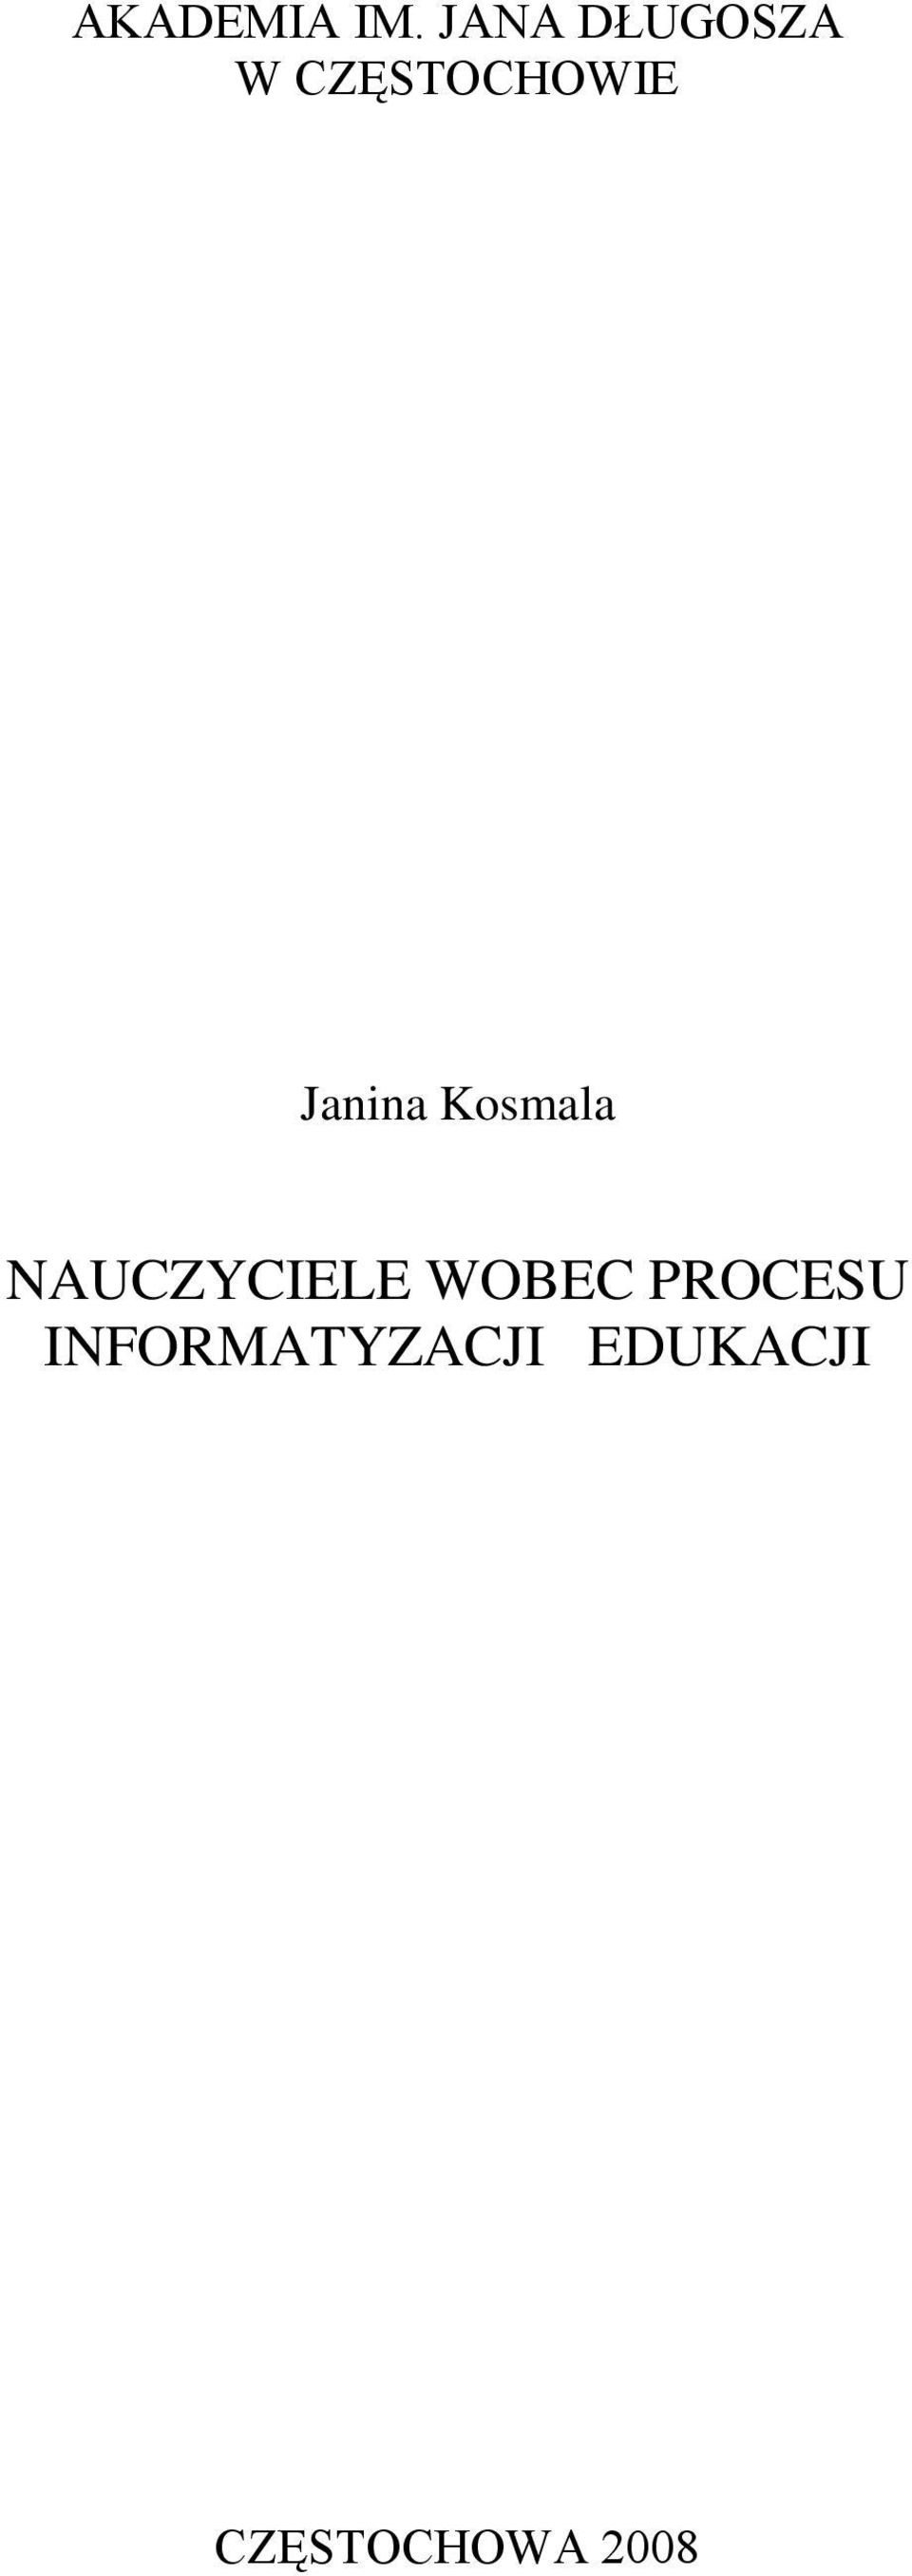 Janina Kosmala NAUCZYCIELE